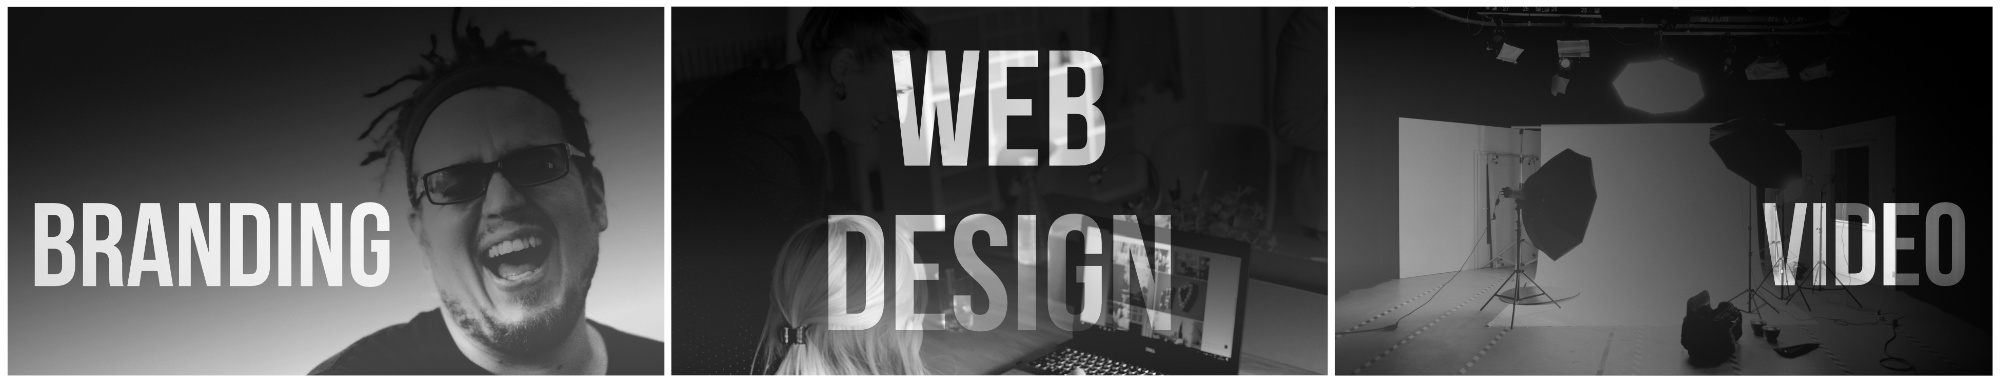 Branding, website design, video